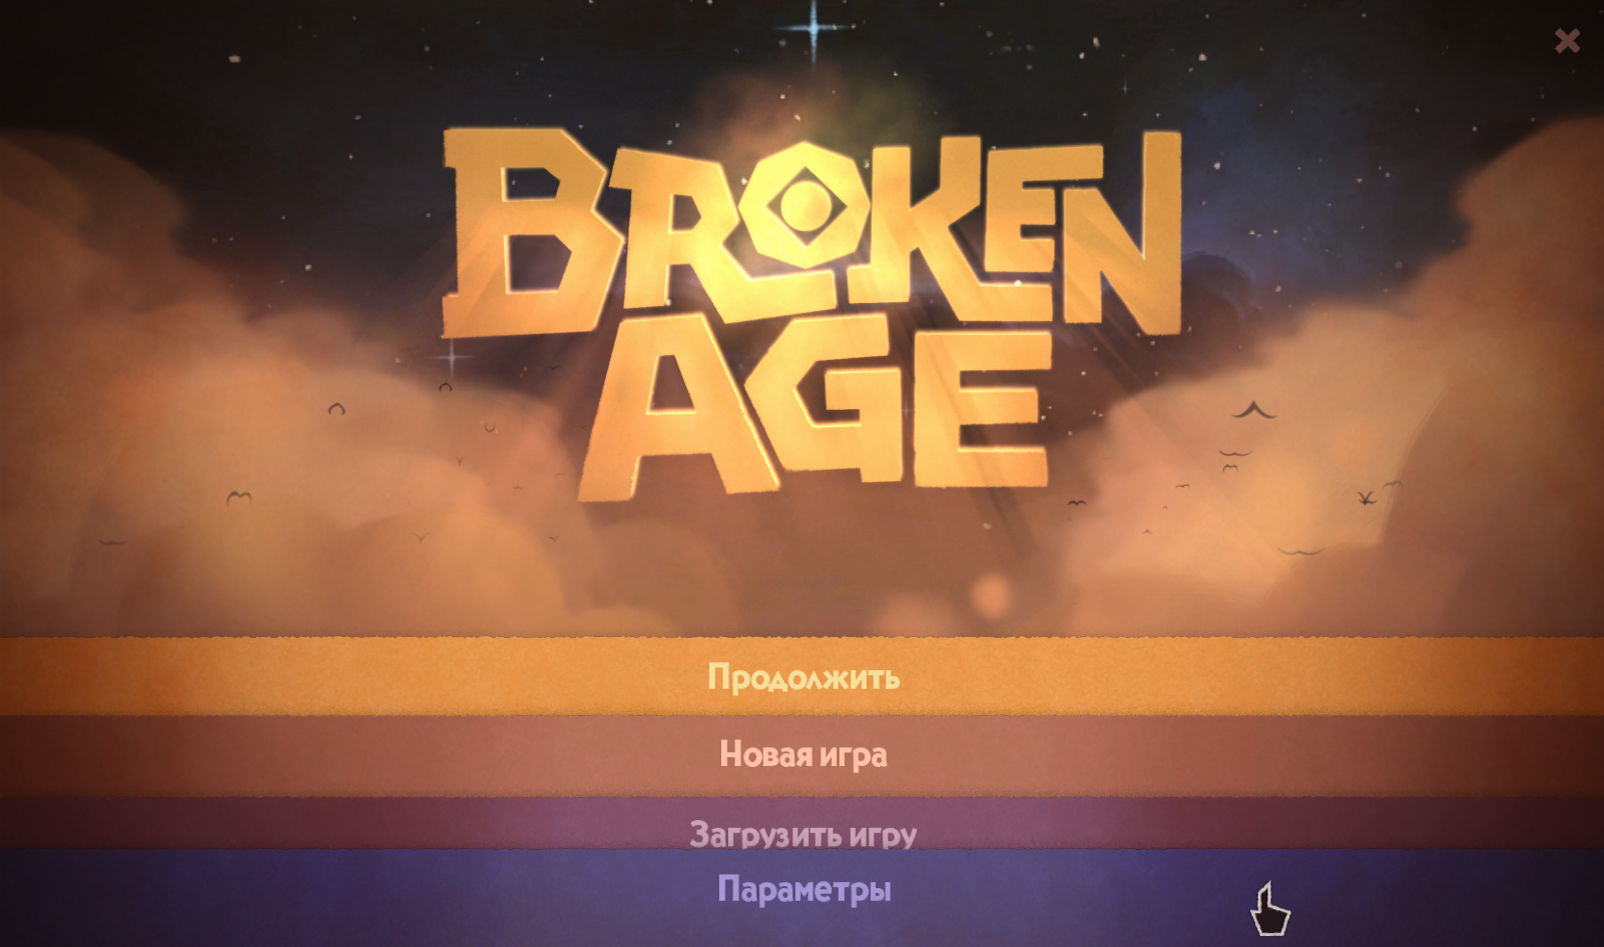 Broken игра. Game main menu Design. Broken age: complete. Game is broken